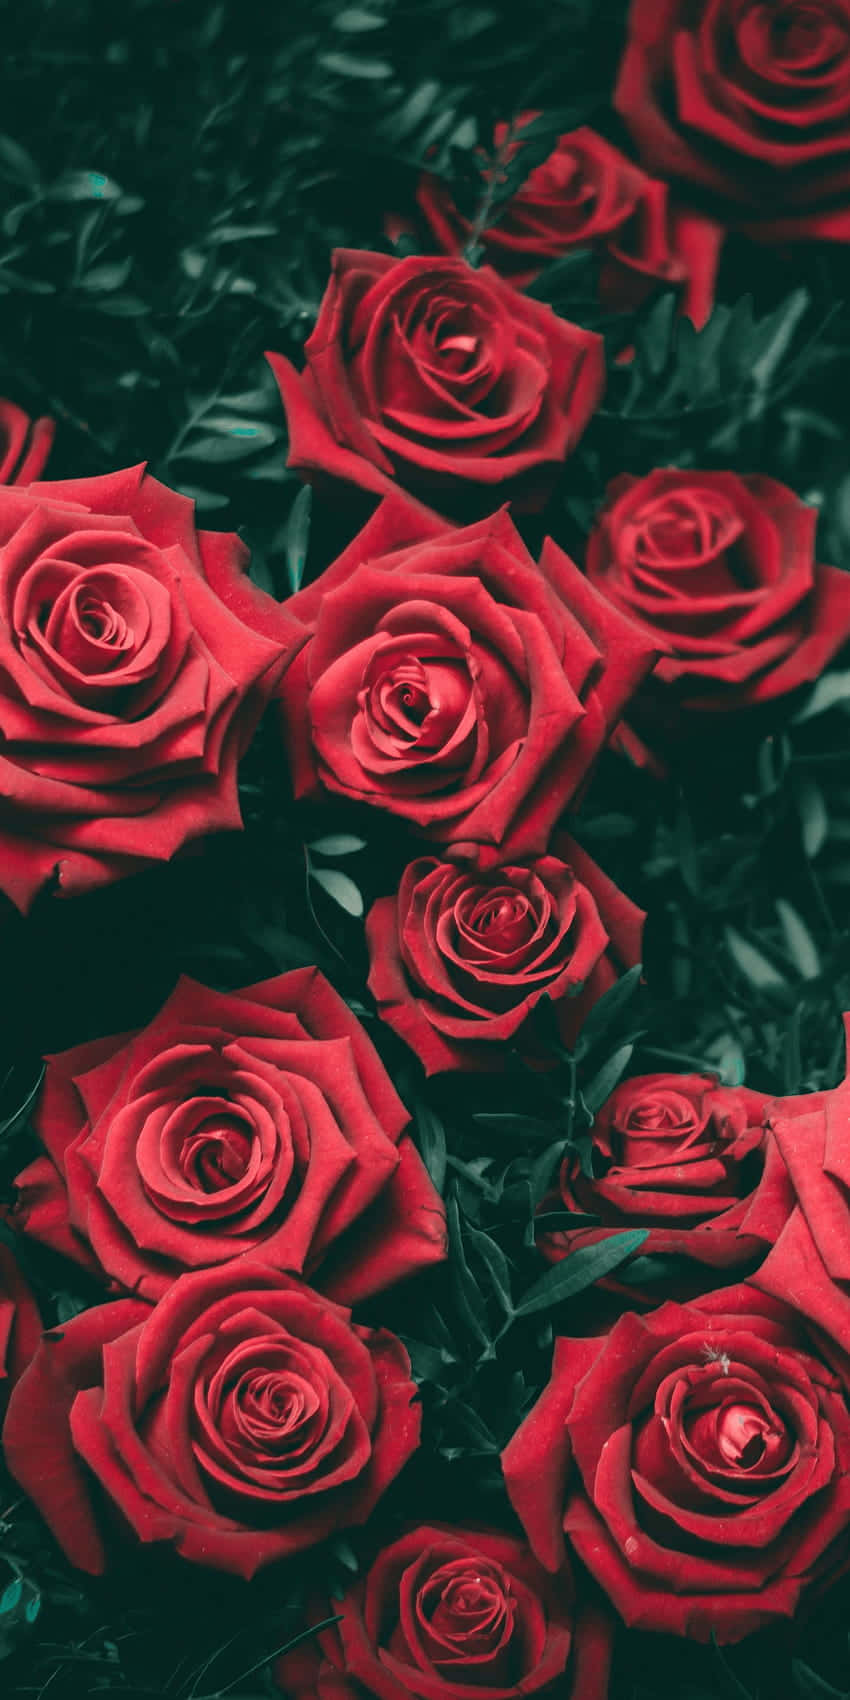 Erhellensie Ihren Tag Mit Einer Atemberaubenden Roten Blume! Wallpaper